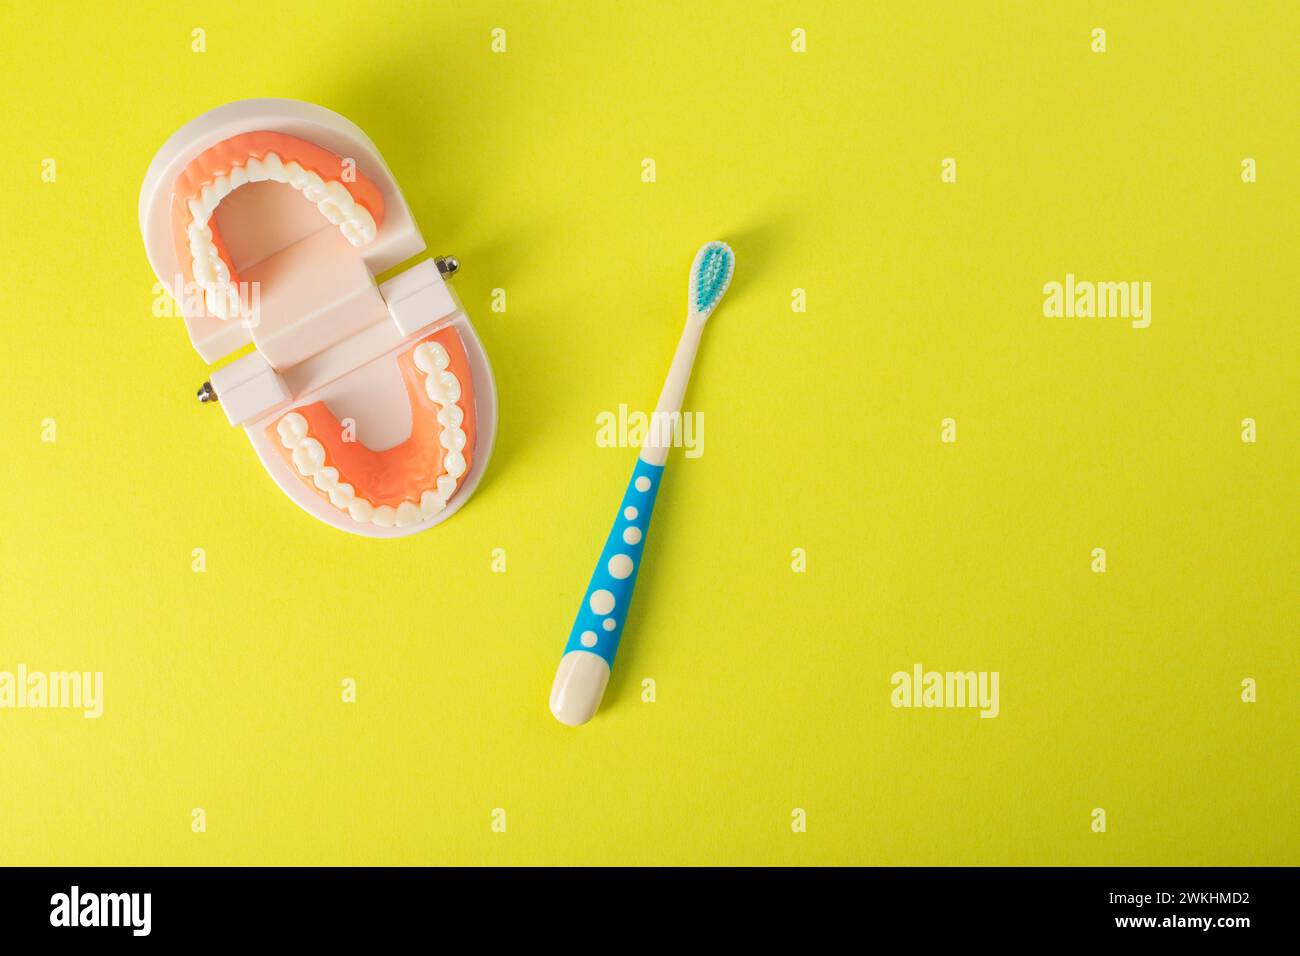 Spazzolino per bambini con setole morbide su sfondo giallo accanto a un modello di mascella dentale. Il concetto di cura e igiene per la cavità orale Foto Stock